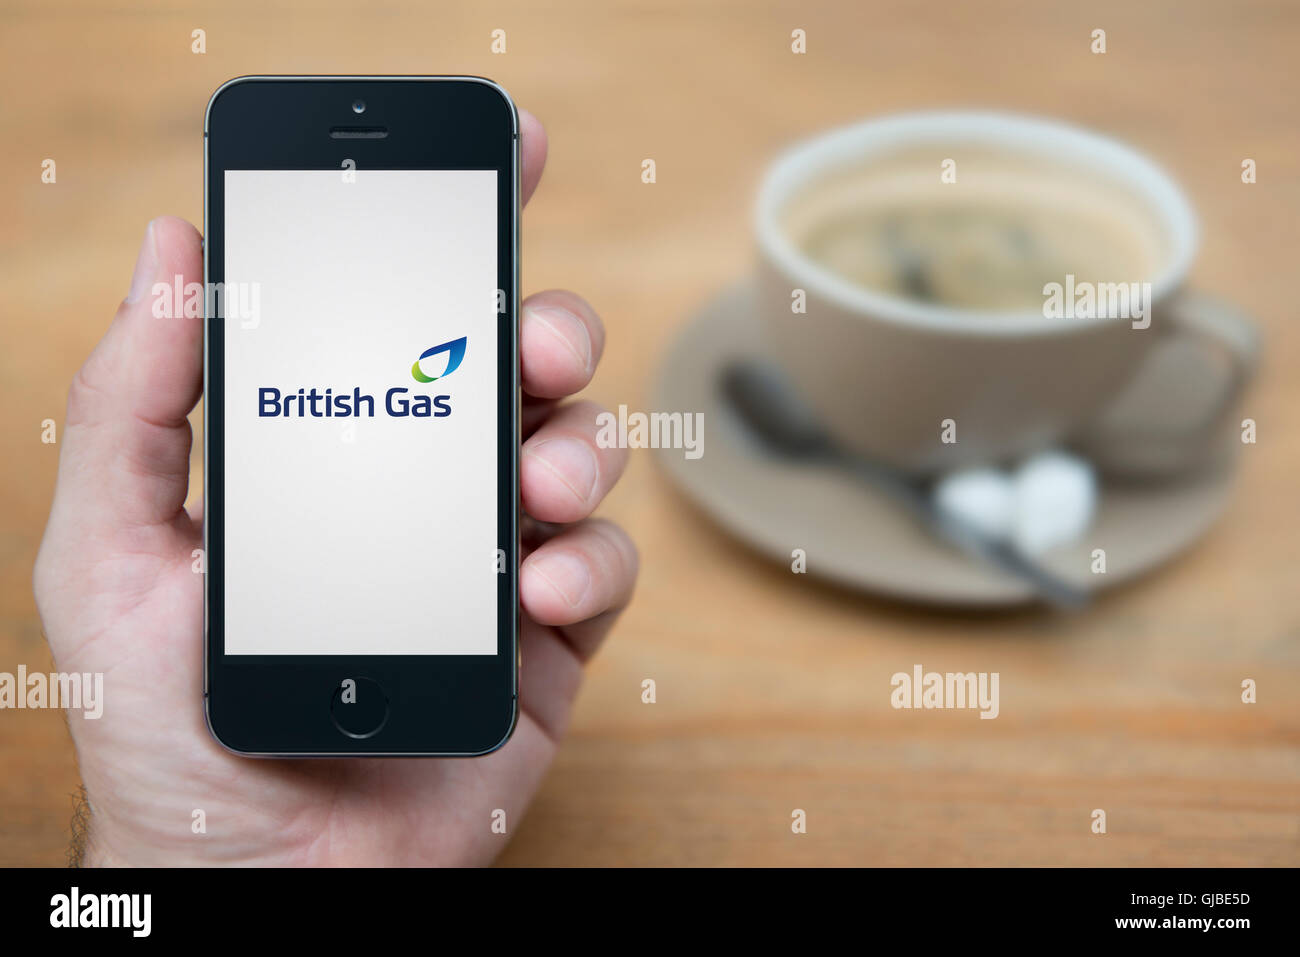 Un homme se penche sur son iPhone qui affiche le logo de British Gas, en restant assis avec une tasse de café (usage éditorial uniquement). Banque D'Images